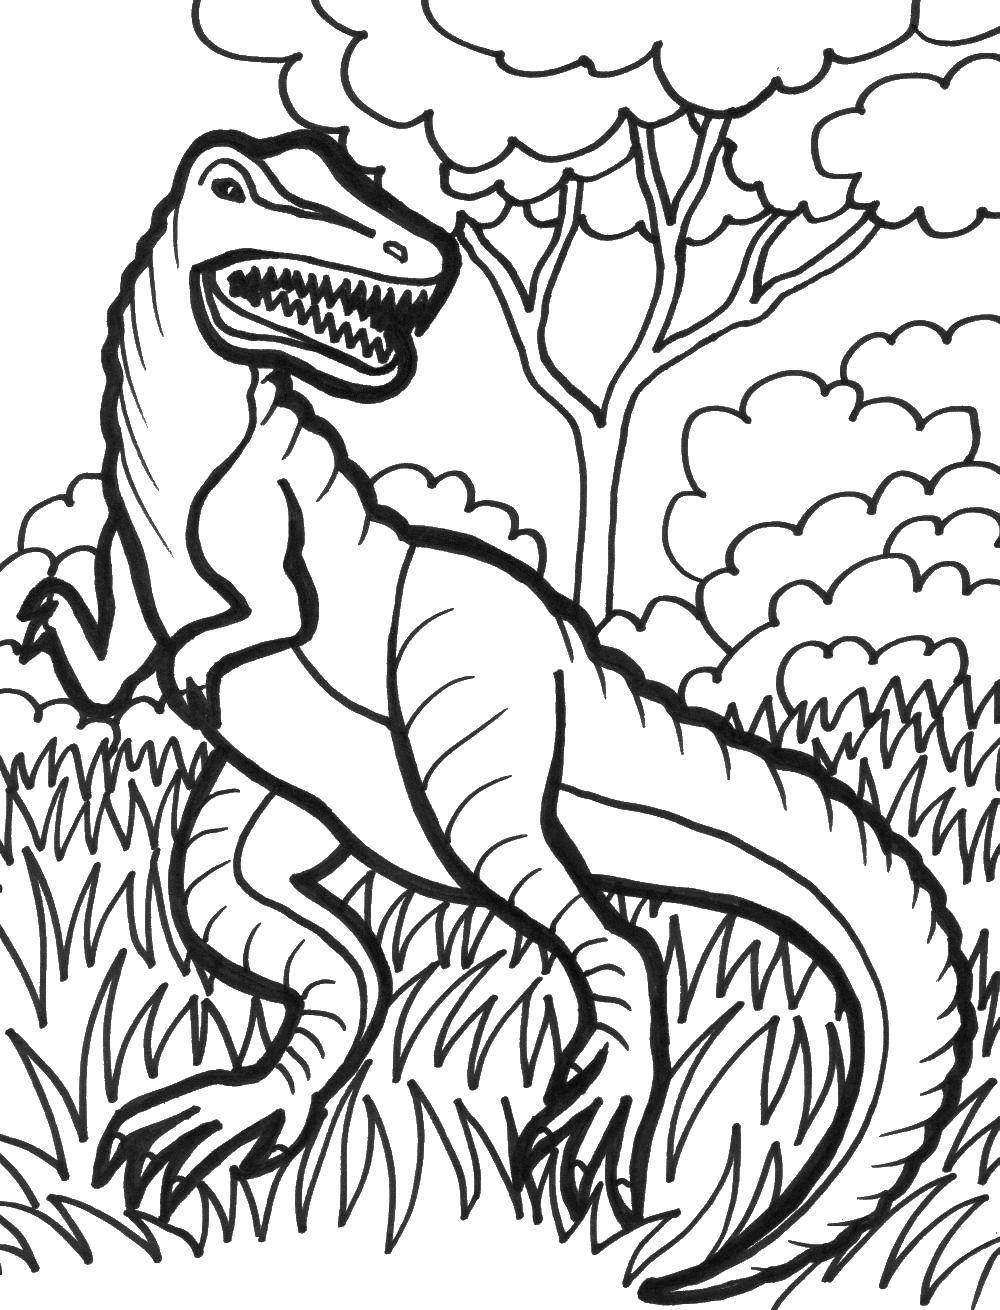 Опис: розмальовки  Тиранозавр в траві. Категорія: парк юрського періоду. Теги:  Динозаври, тиранозавр.